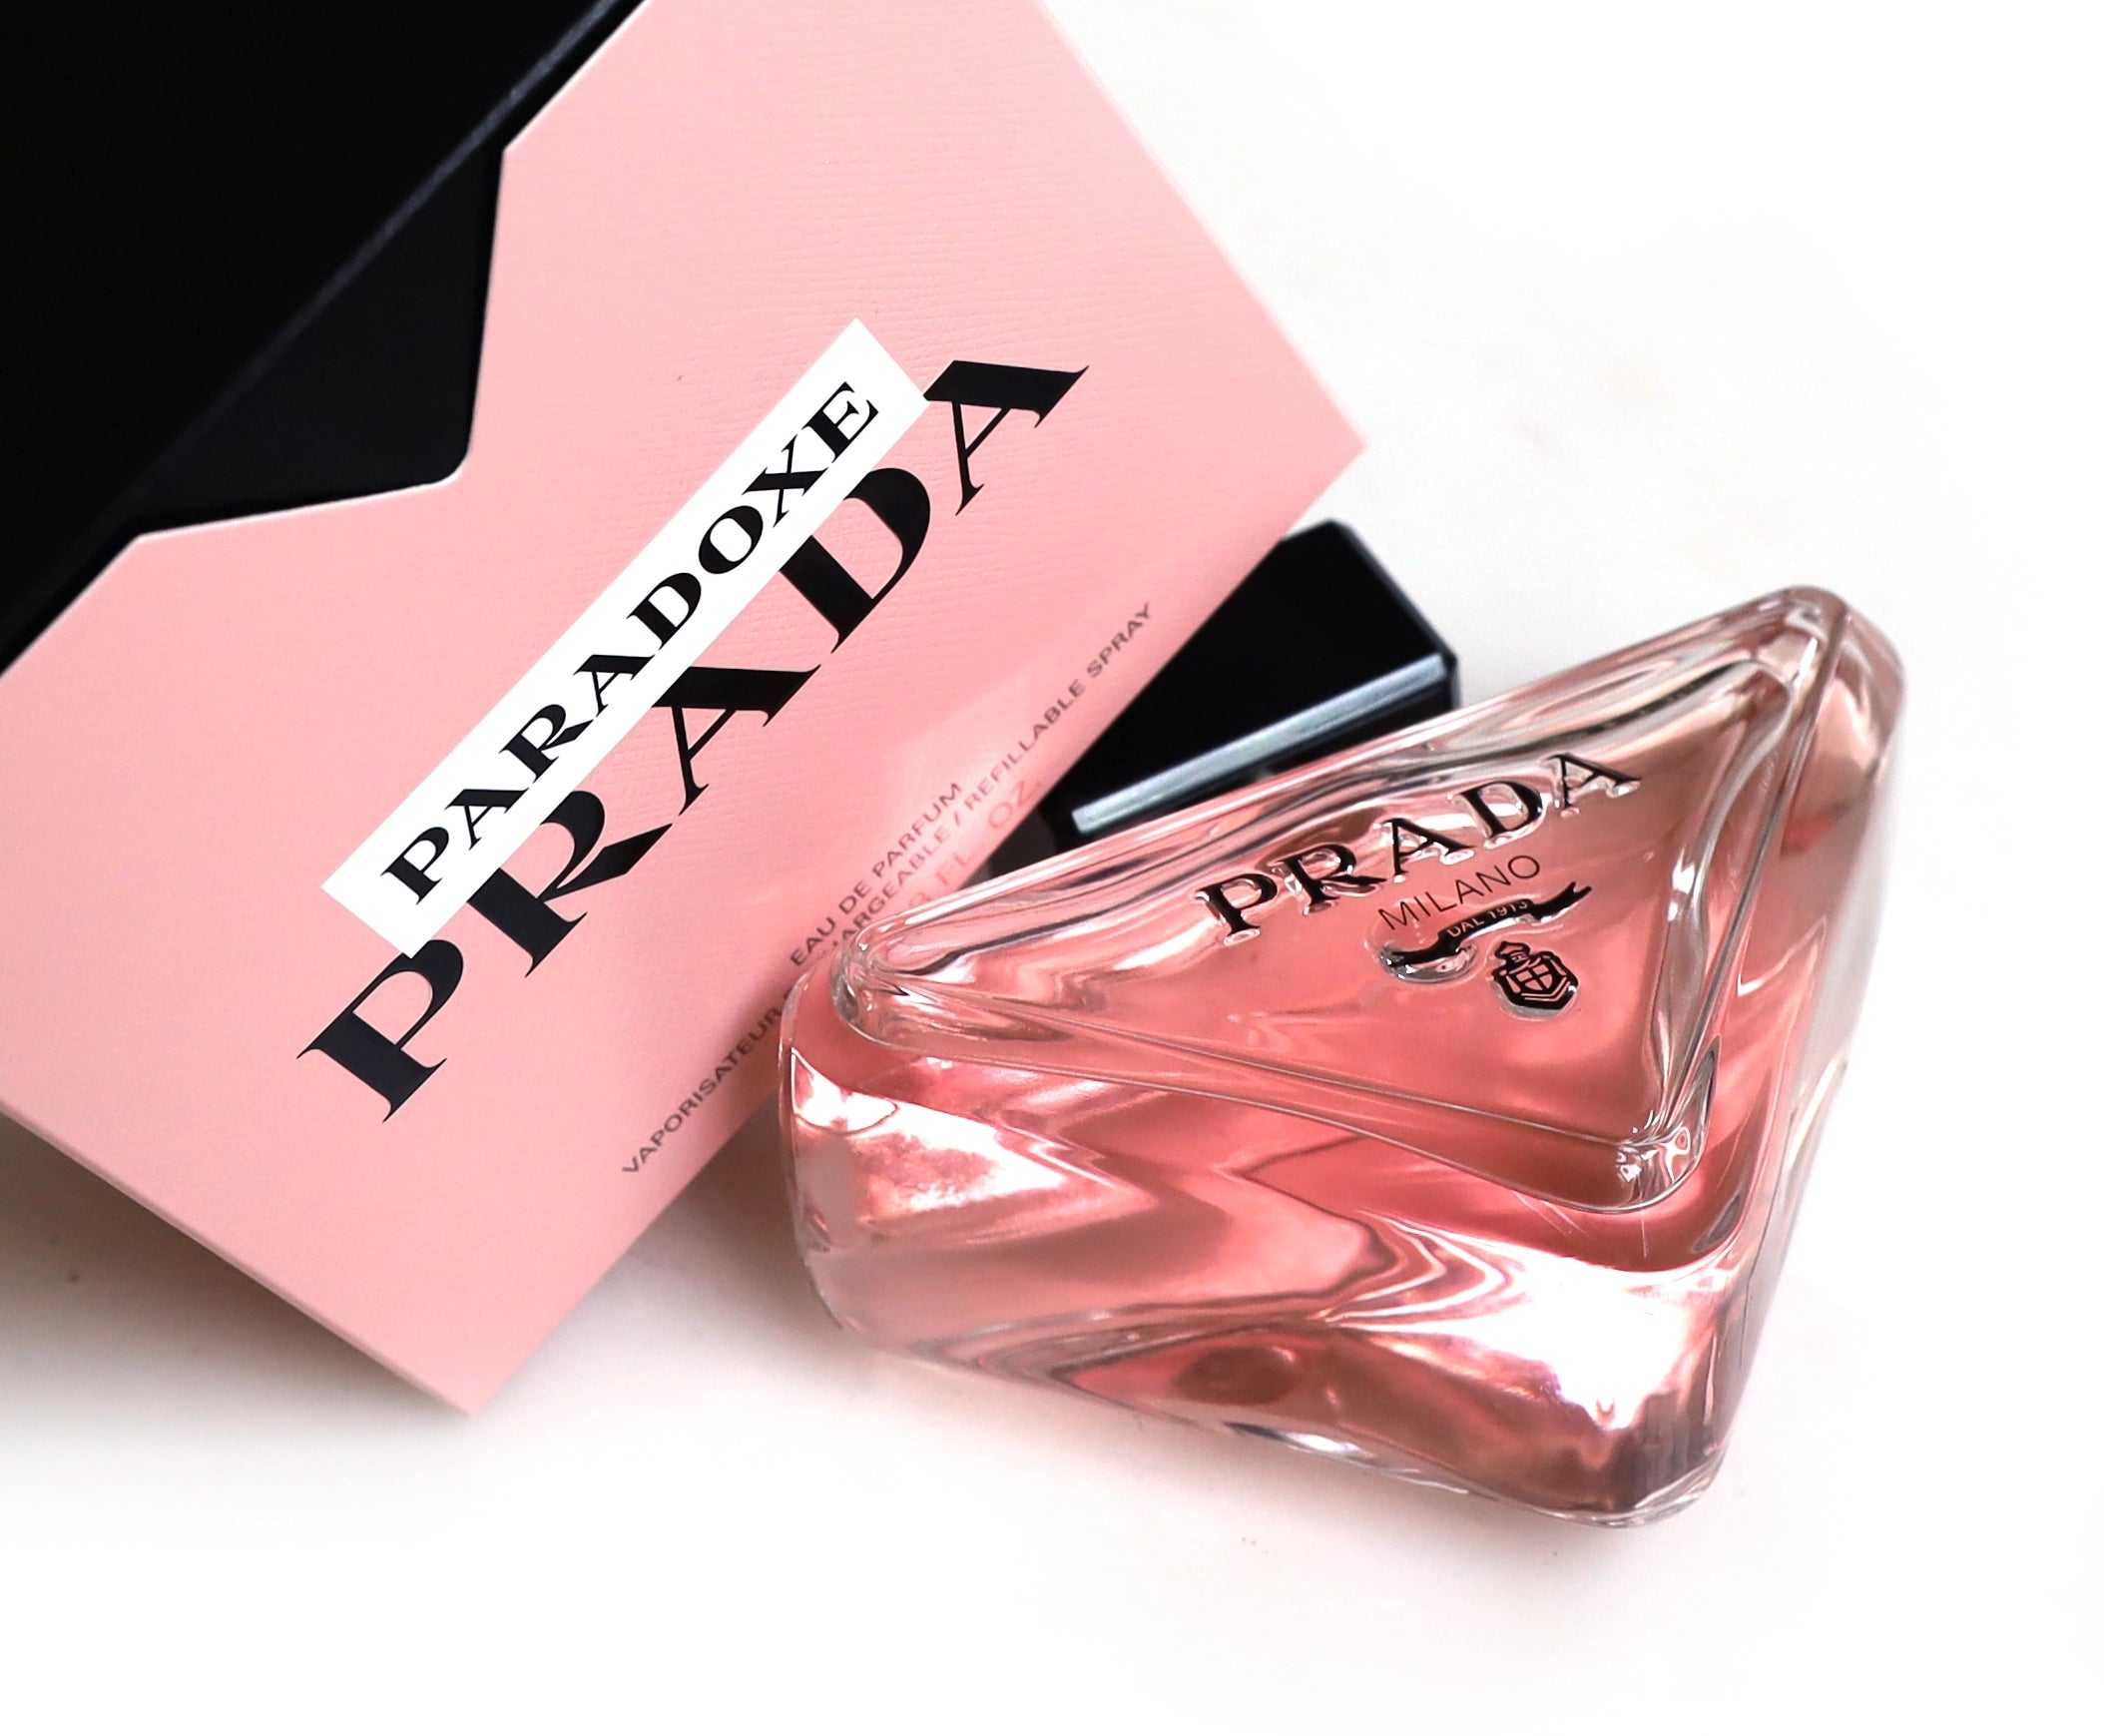 Shop All Prada perfumes at The Perfume World